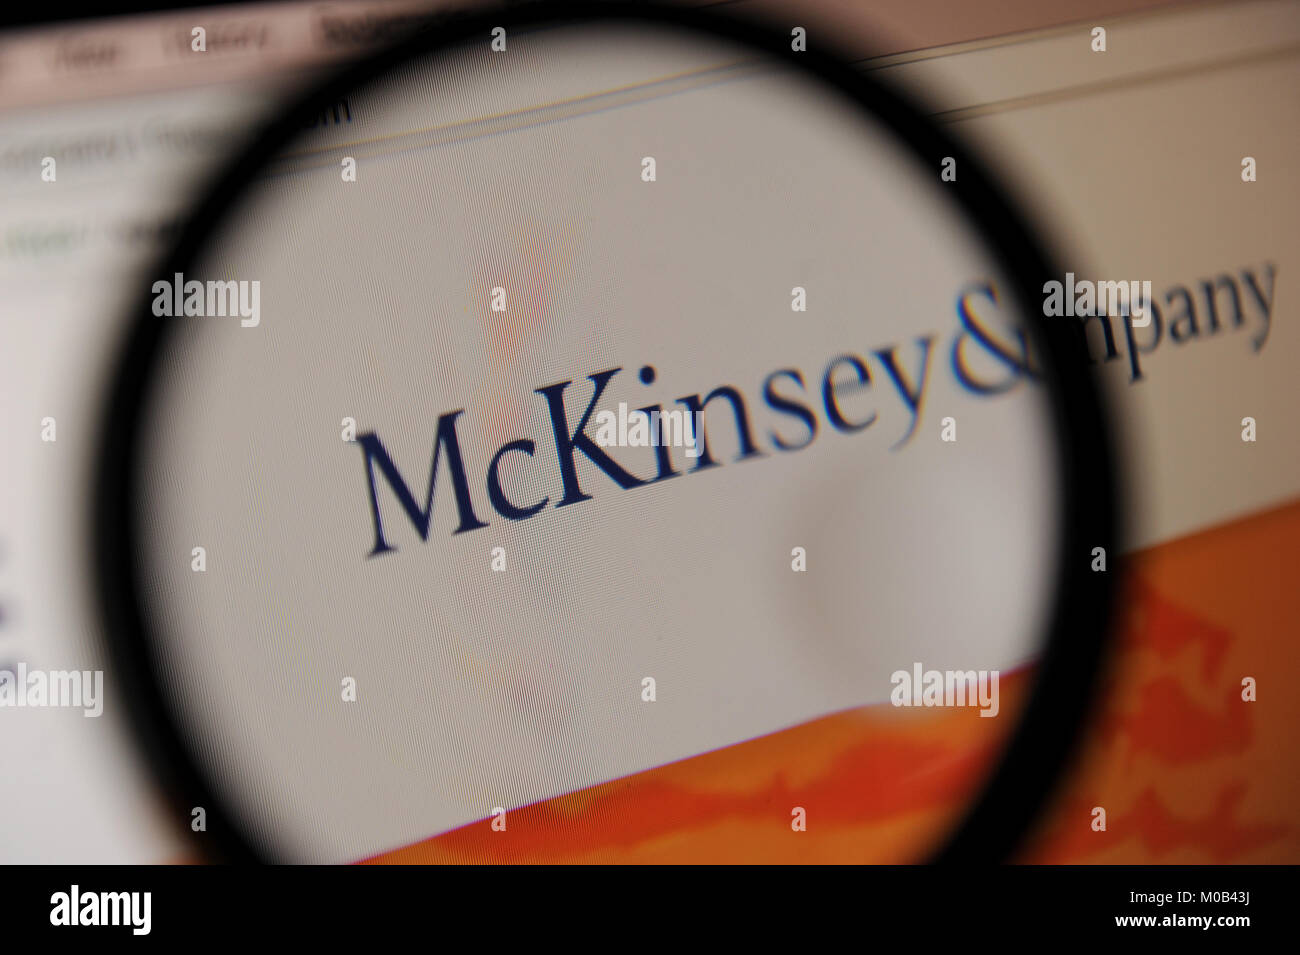 Una donna guarda di McKinsey & Company sito web Foto Stock